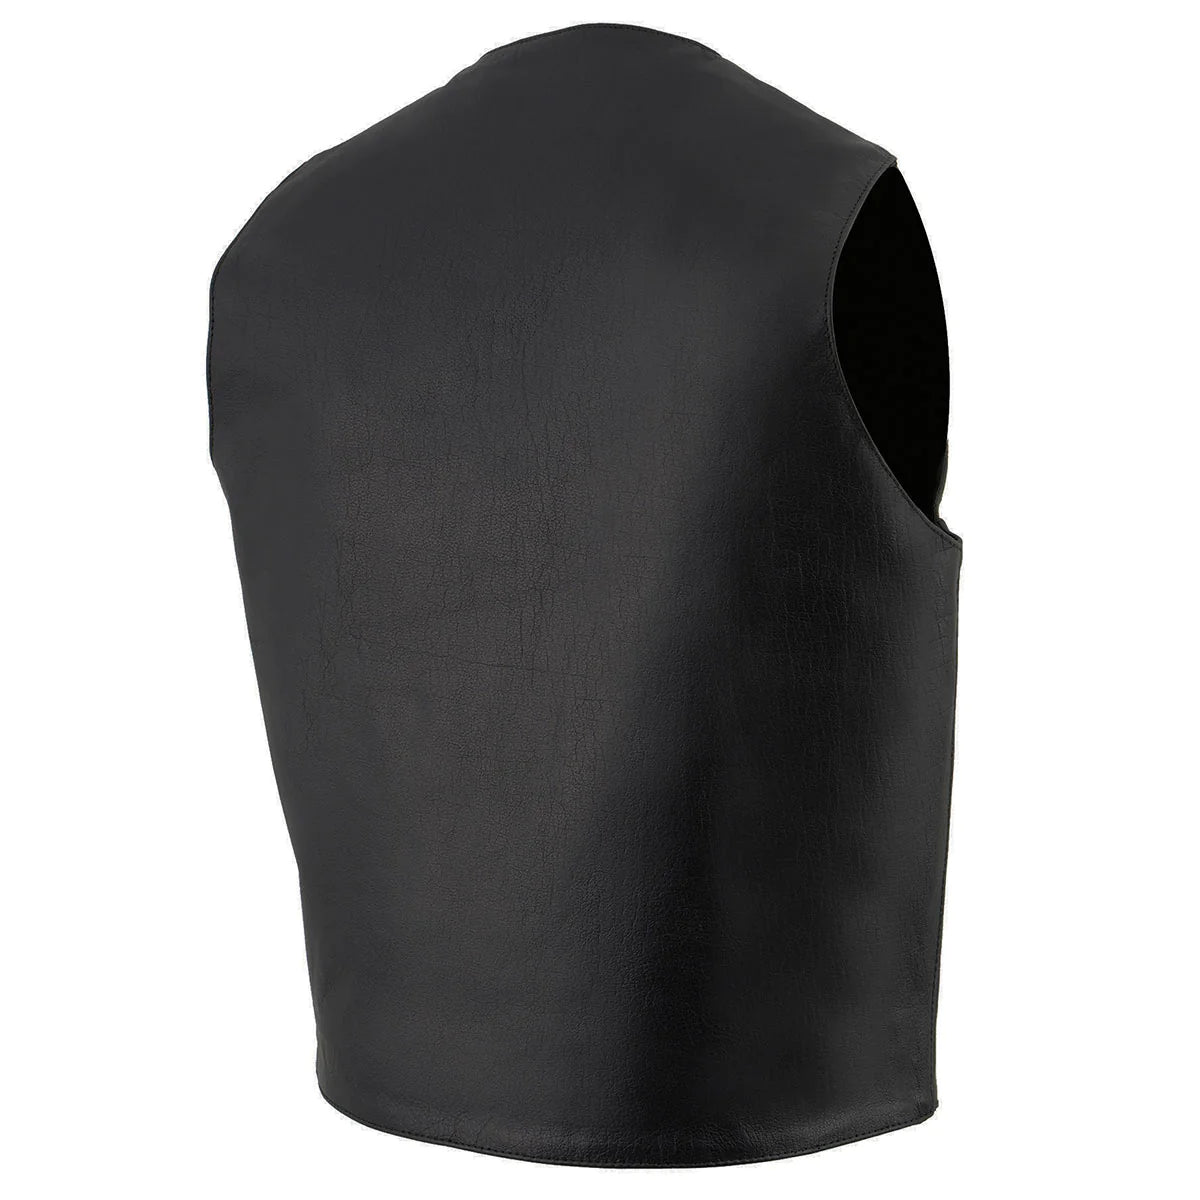 Men's Black Leather Classic Snap Front Vest